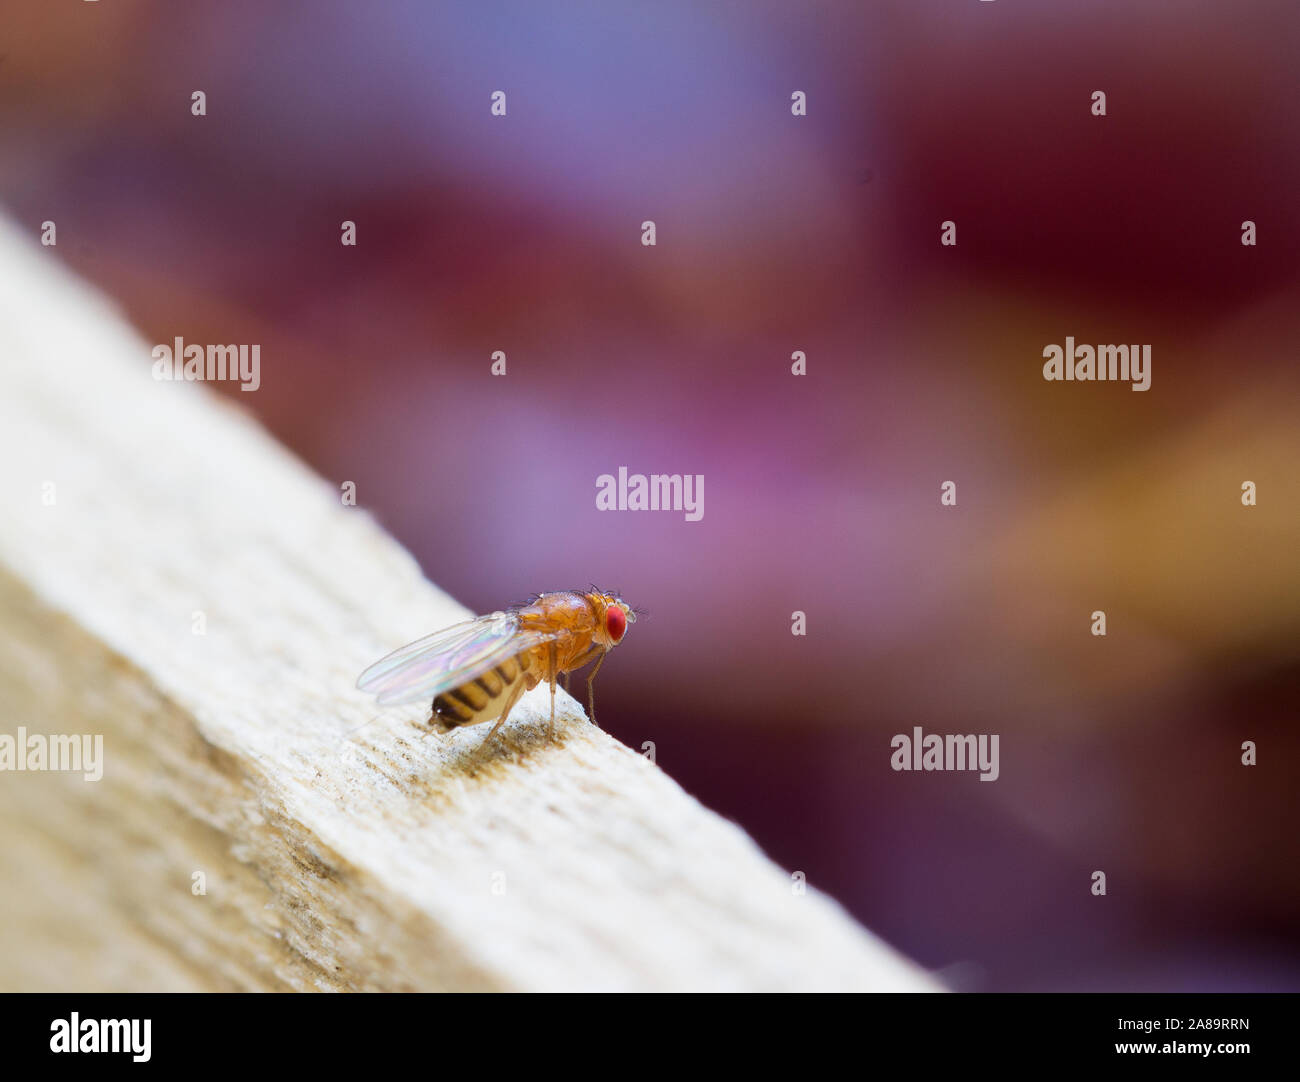 Insectes mouche Drosophila Banque D'Images